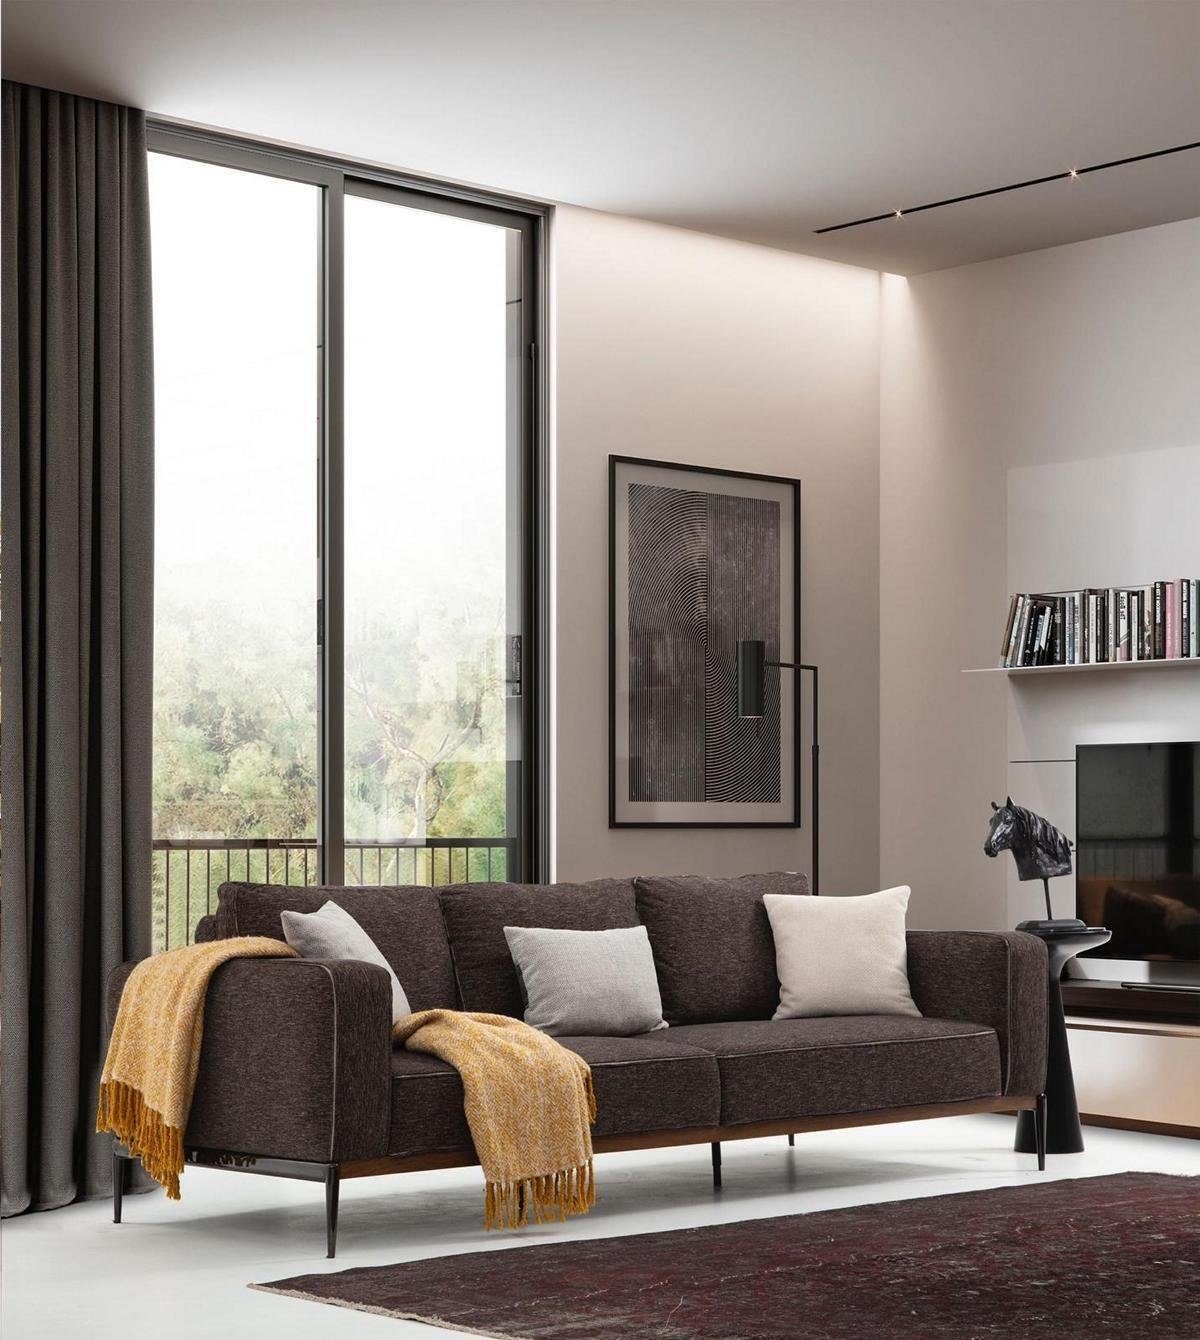 JVmoebel 3-Sitzer Dreisitzer Sofa in Design Stoff Wohnzimmer Grau, Teile, Made Modern 3 1 Sitzer Sofas Europa